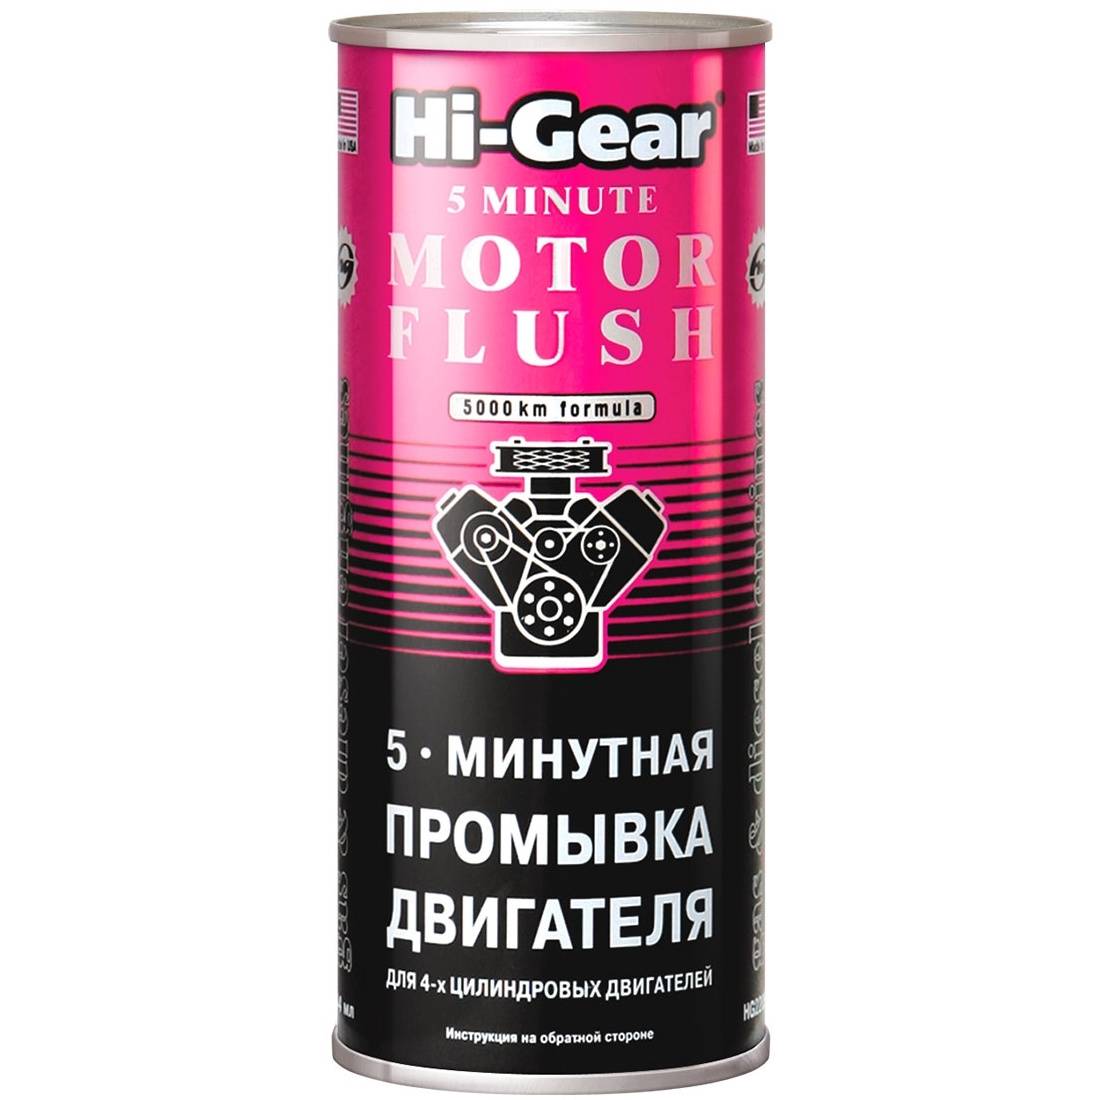 Hi-gear мягкий очиститель двигателя: инструкция, характеристики и отзывы